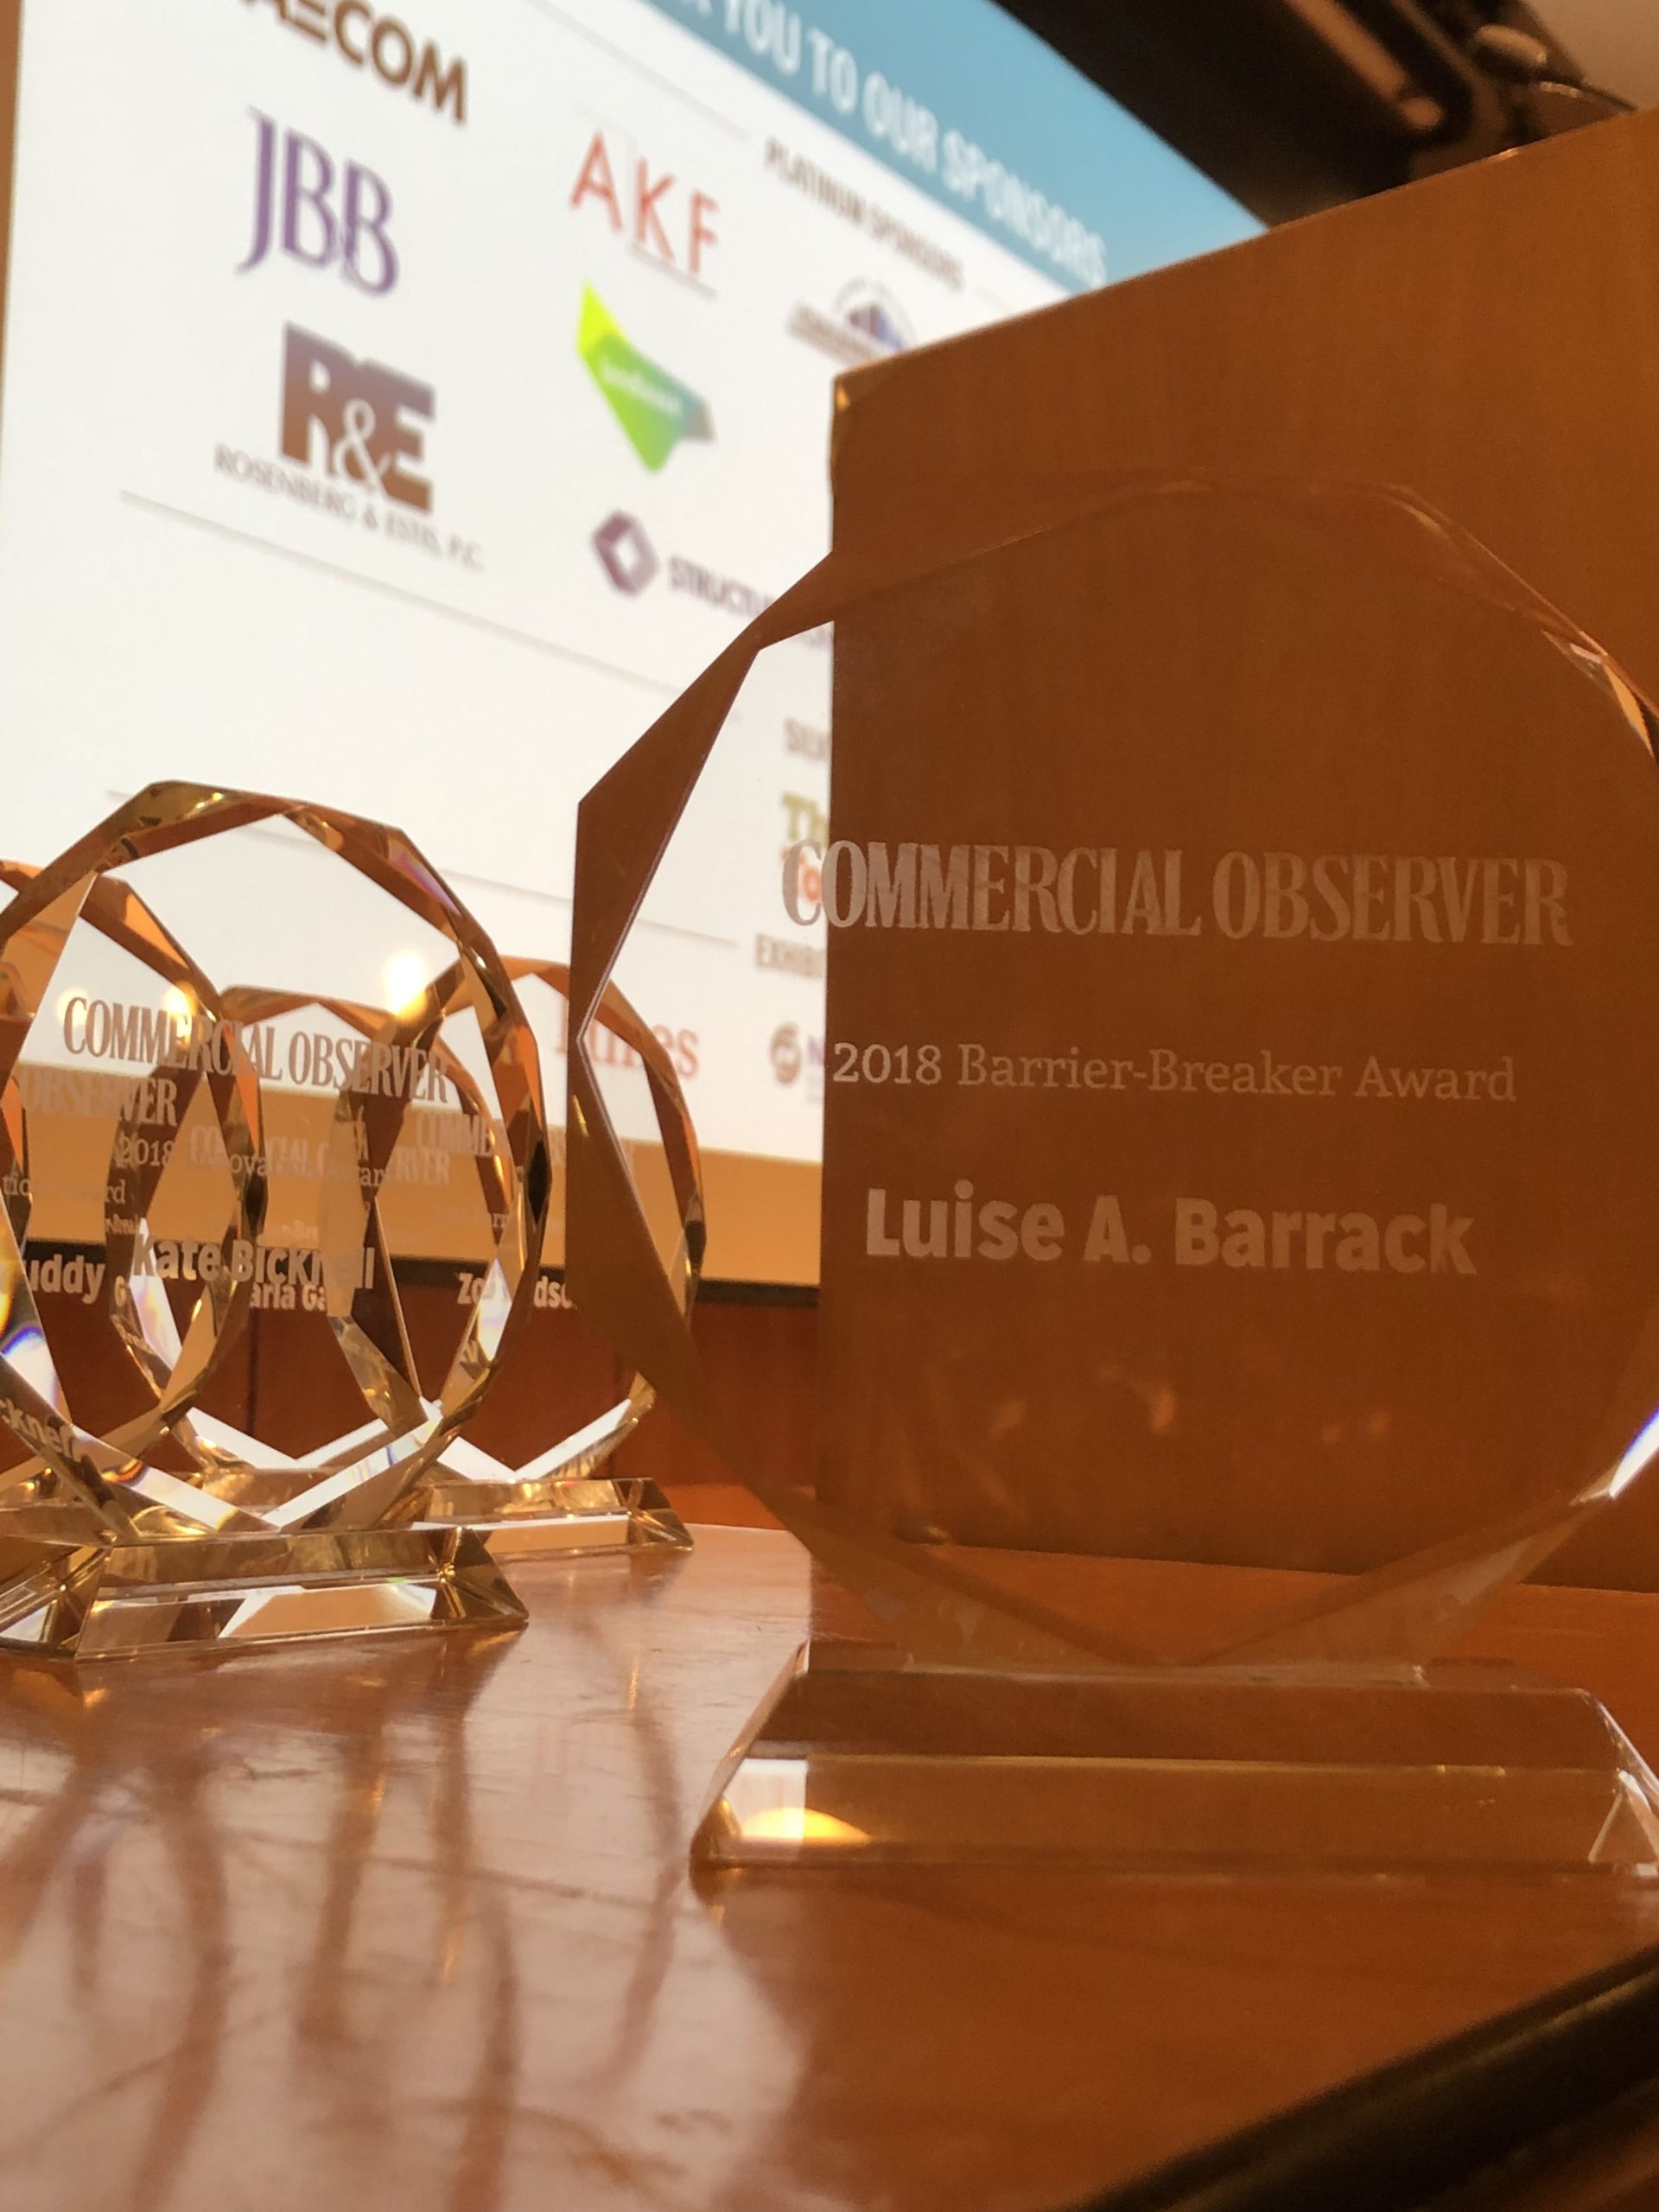 Commercial Observer’s Barrier-Breaker Award